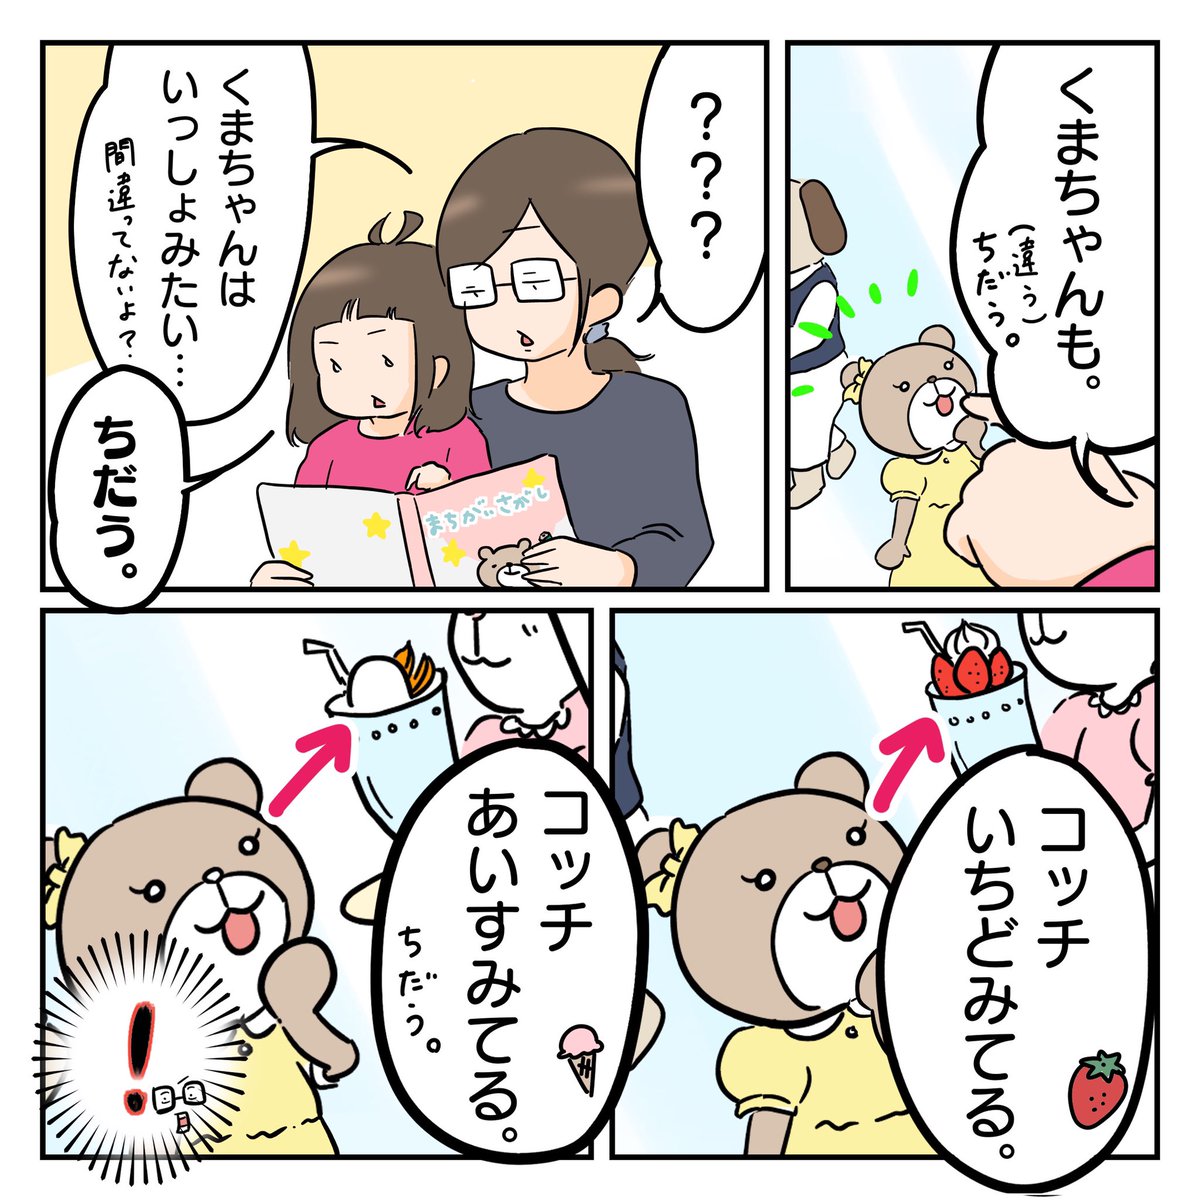 間違いの数間違っとる…!((((;゜Д゜)))))))←

#育児漫画 
#2歳児 